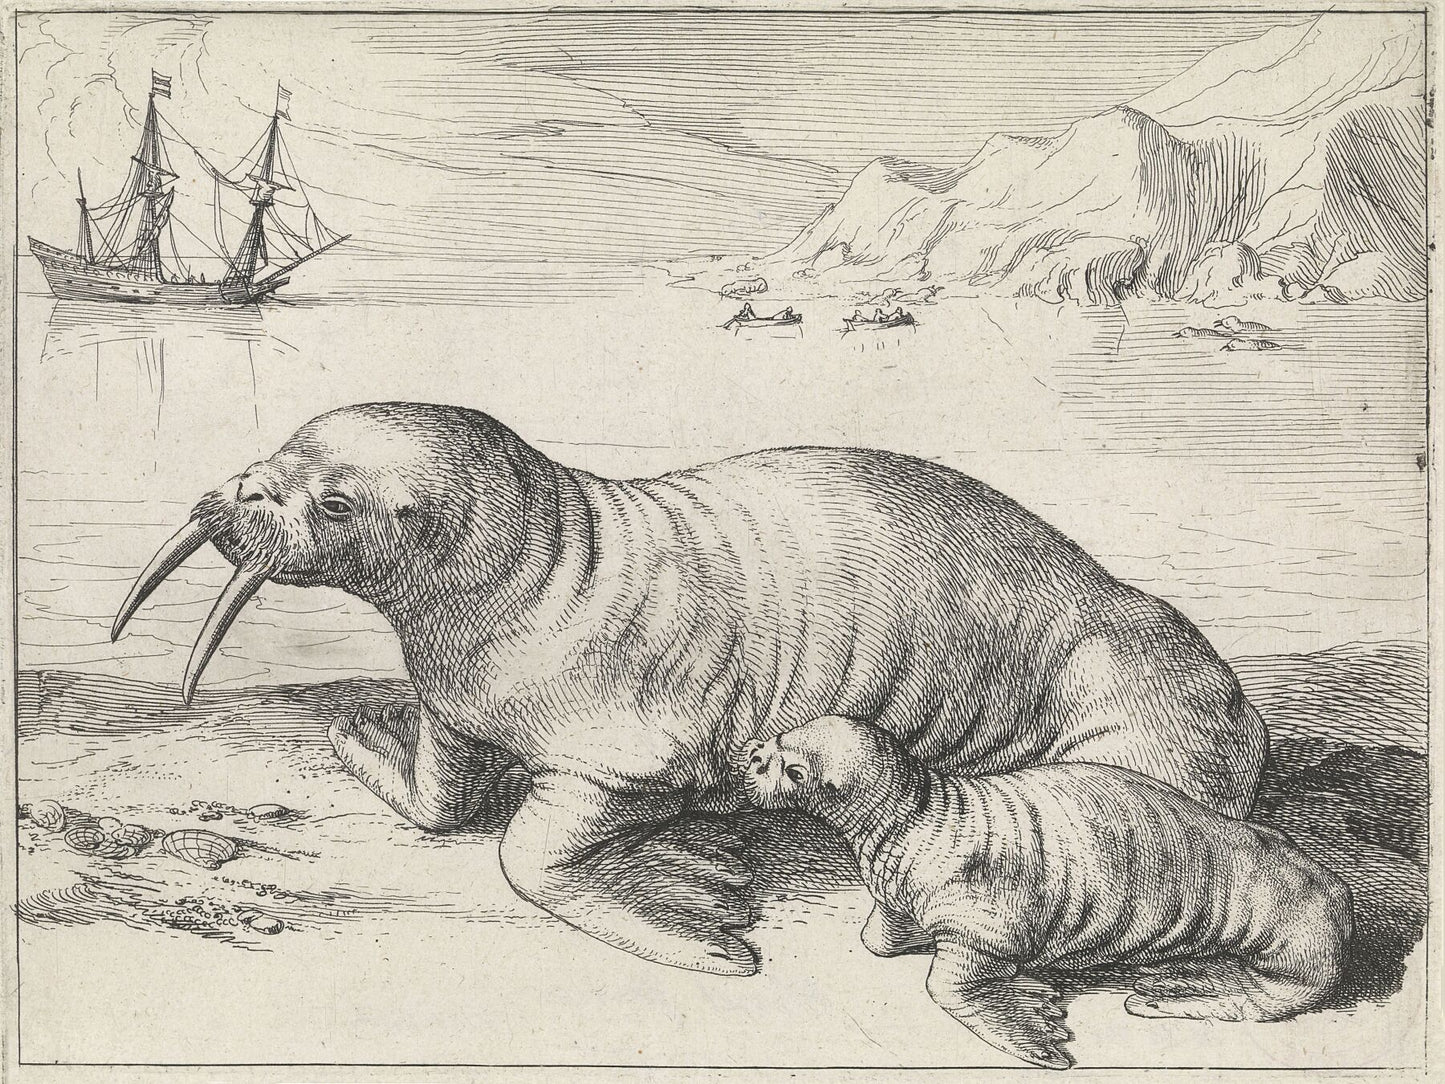 Walrus near Spitsbergen by Hessel Gerritsz - 1591-1632